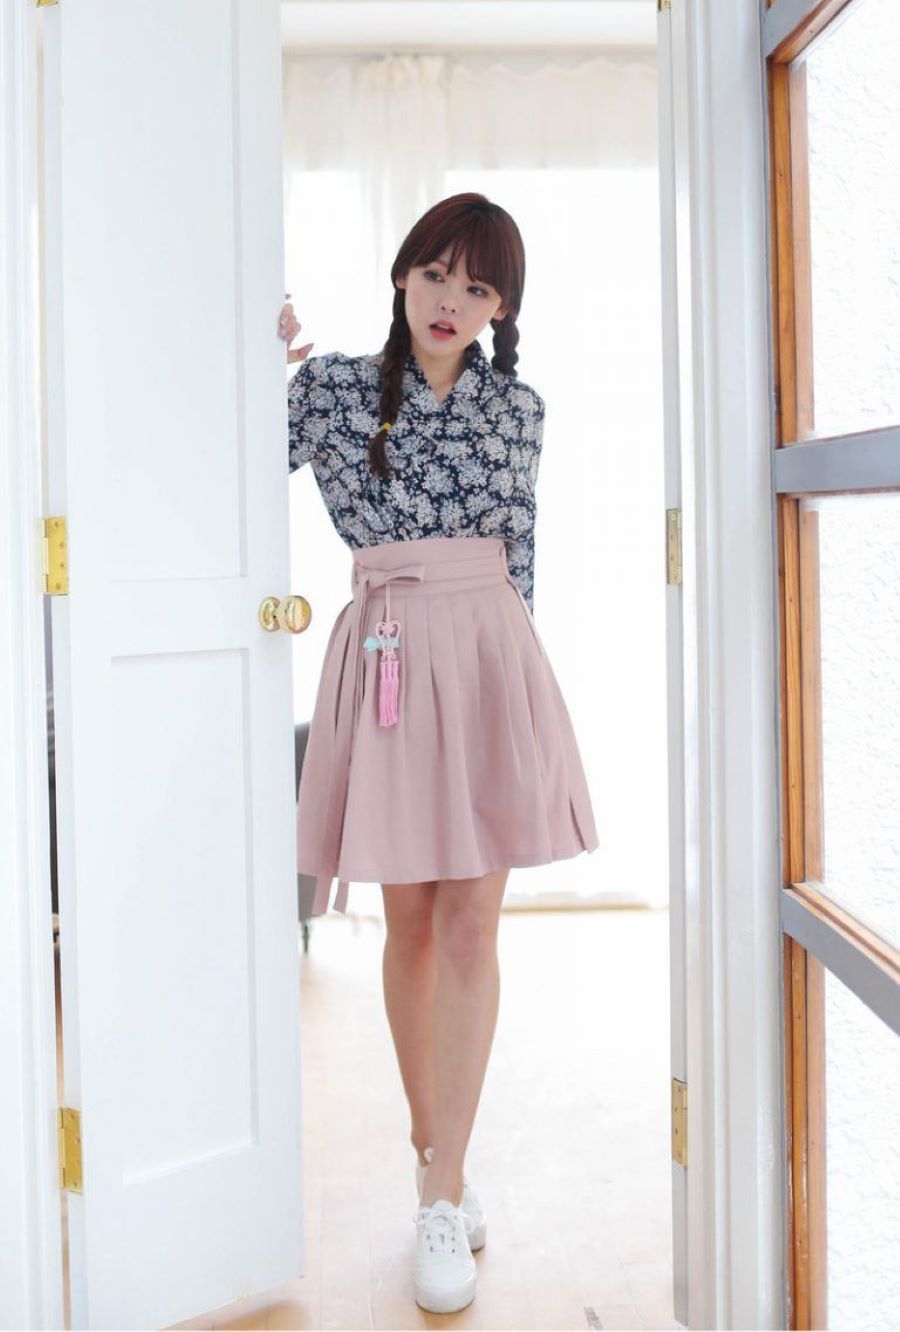 Váy Hanbok cách tân Hàn Quốc dáng ngắn sẽ giúp bạn trông năng động và thoải mái hơn